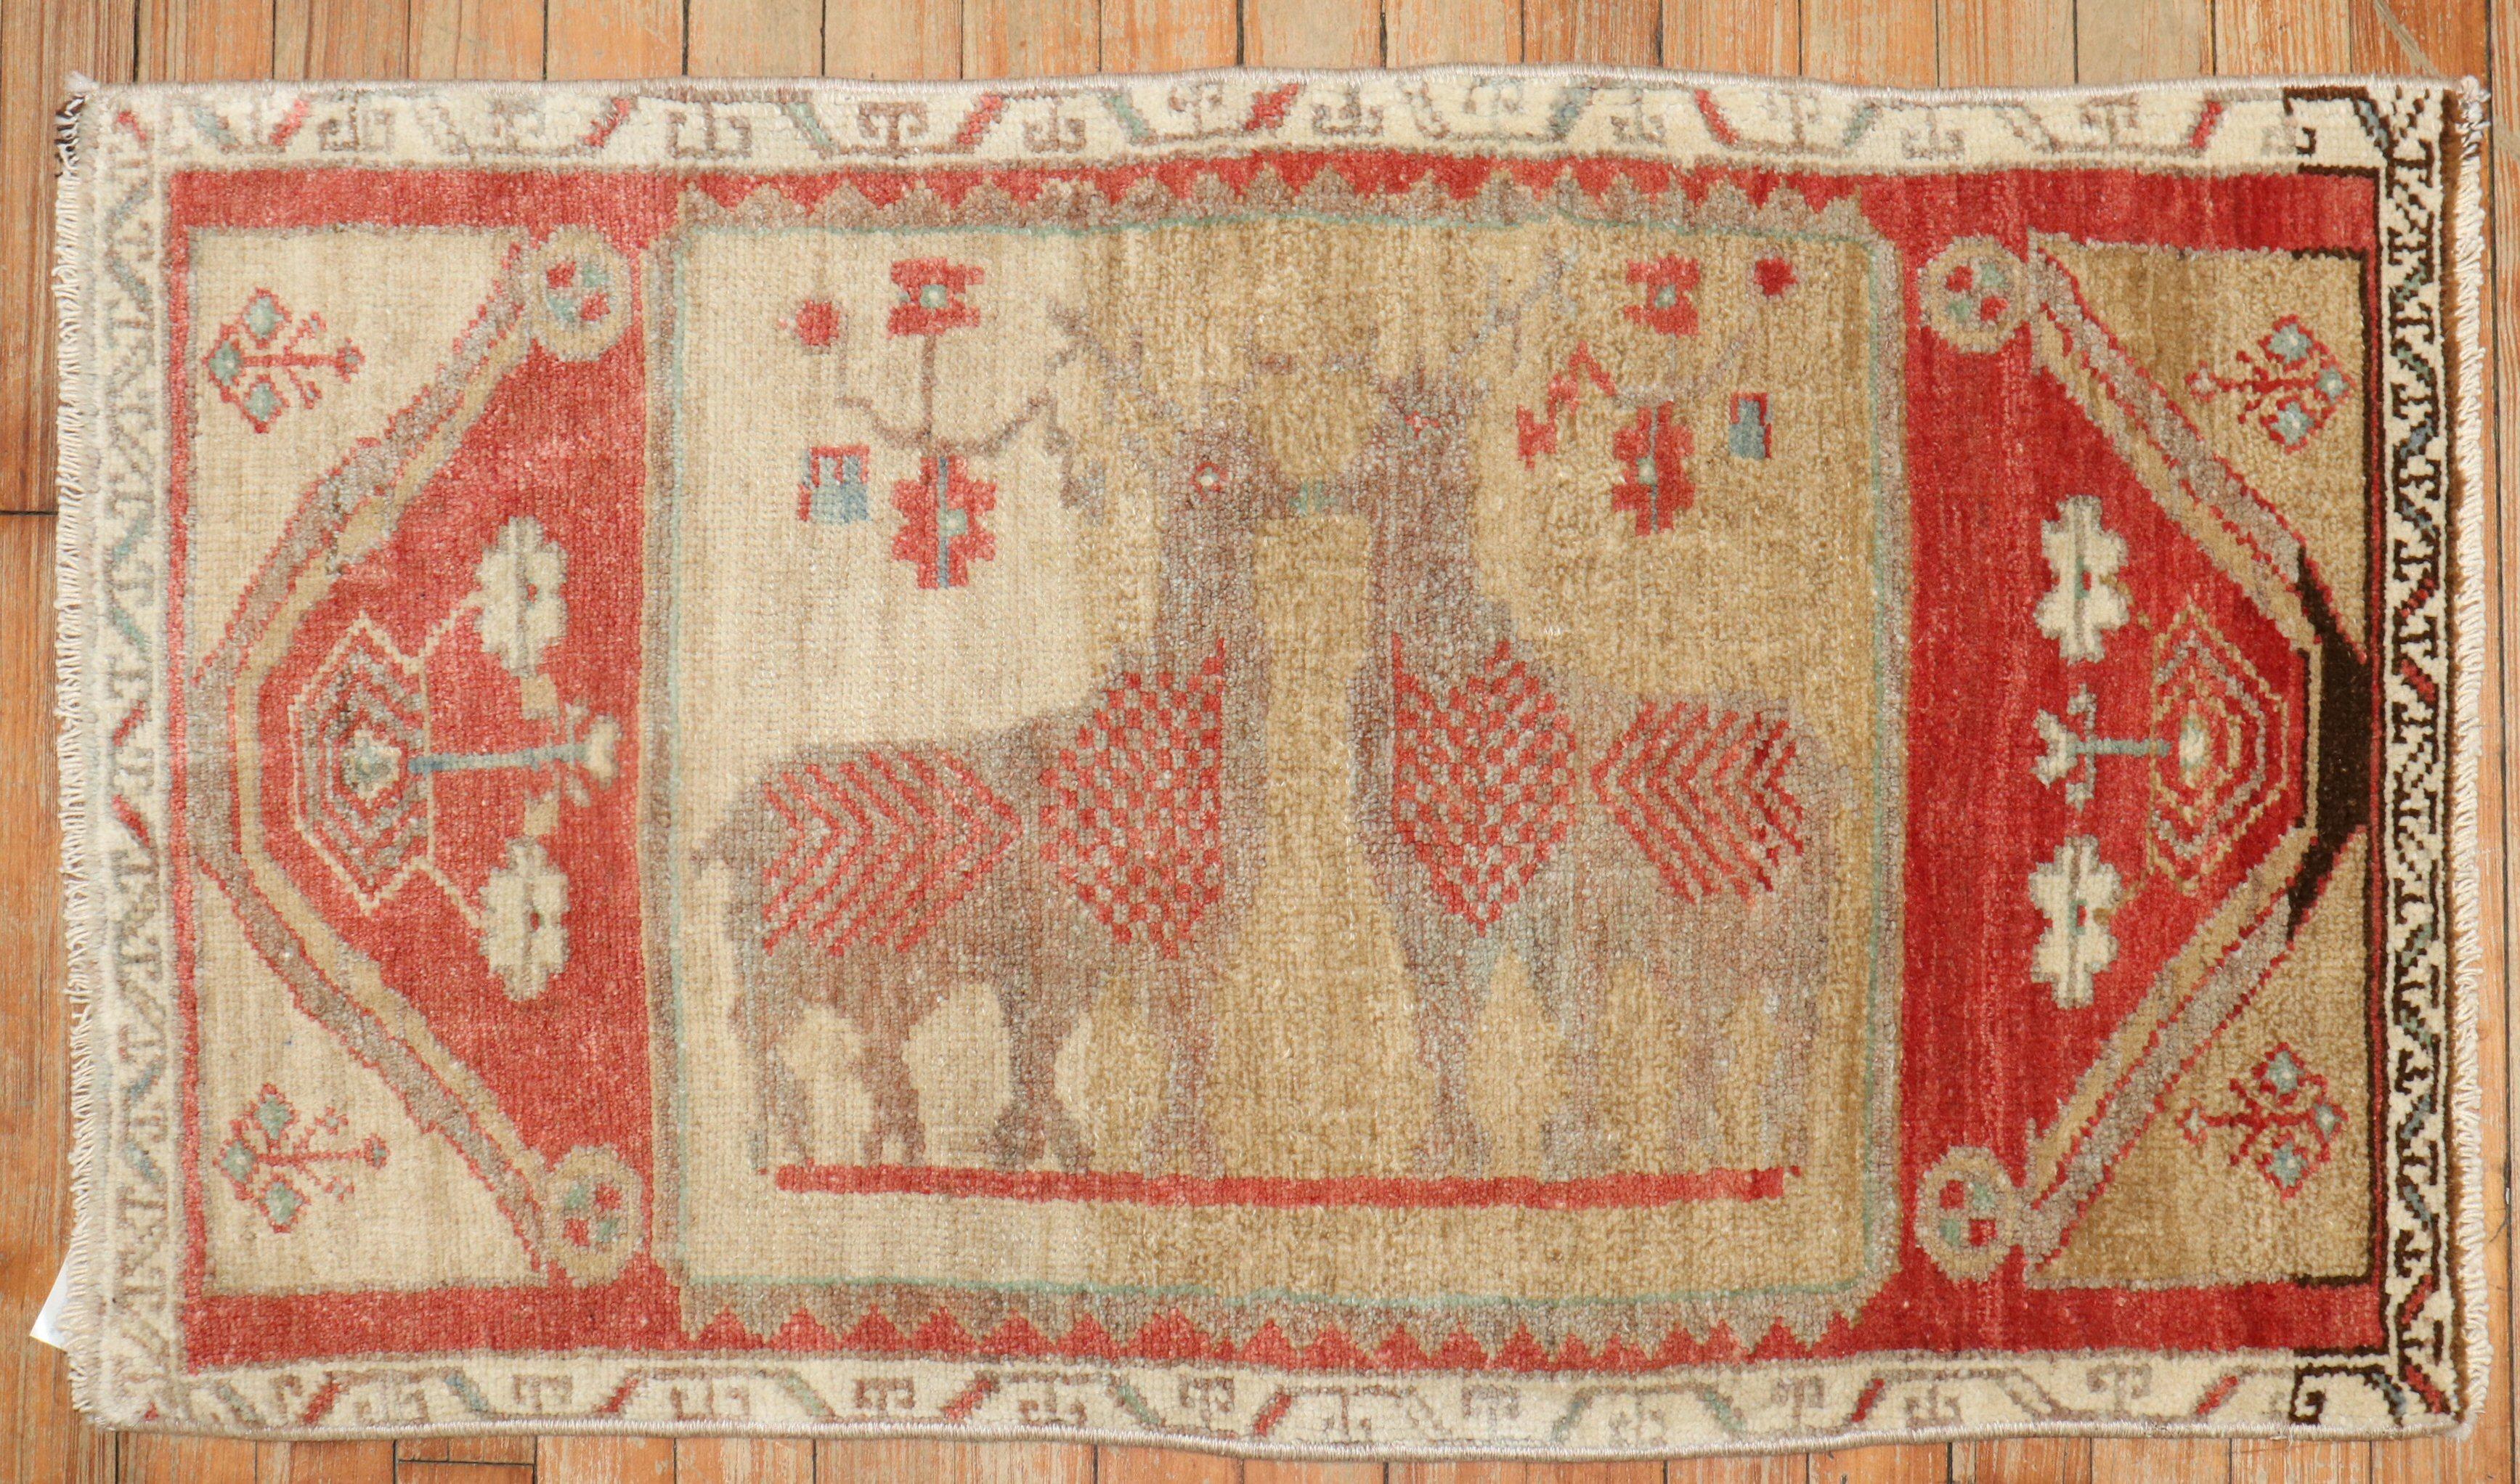 Tapis turc du milieu du 20e siècle représentant deux cerfs sur un champ de chameaux. 

Mesures : 1'10'' x 3'2''.